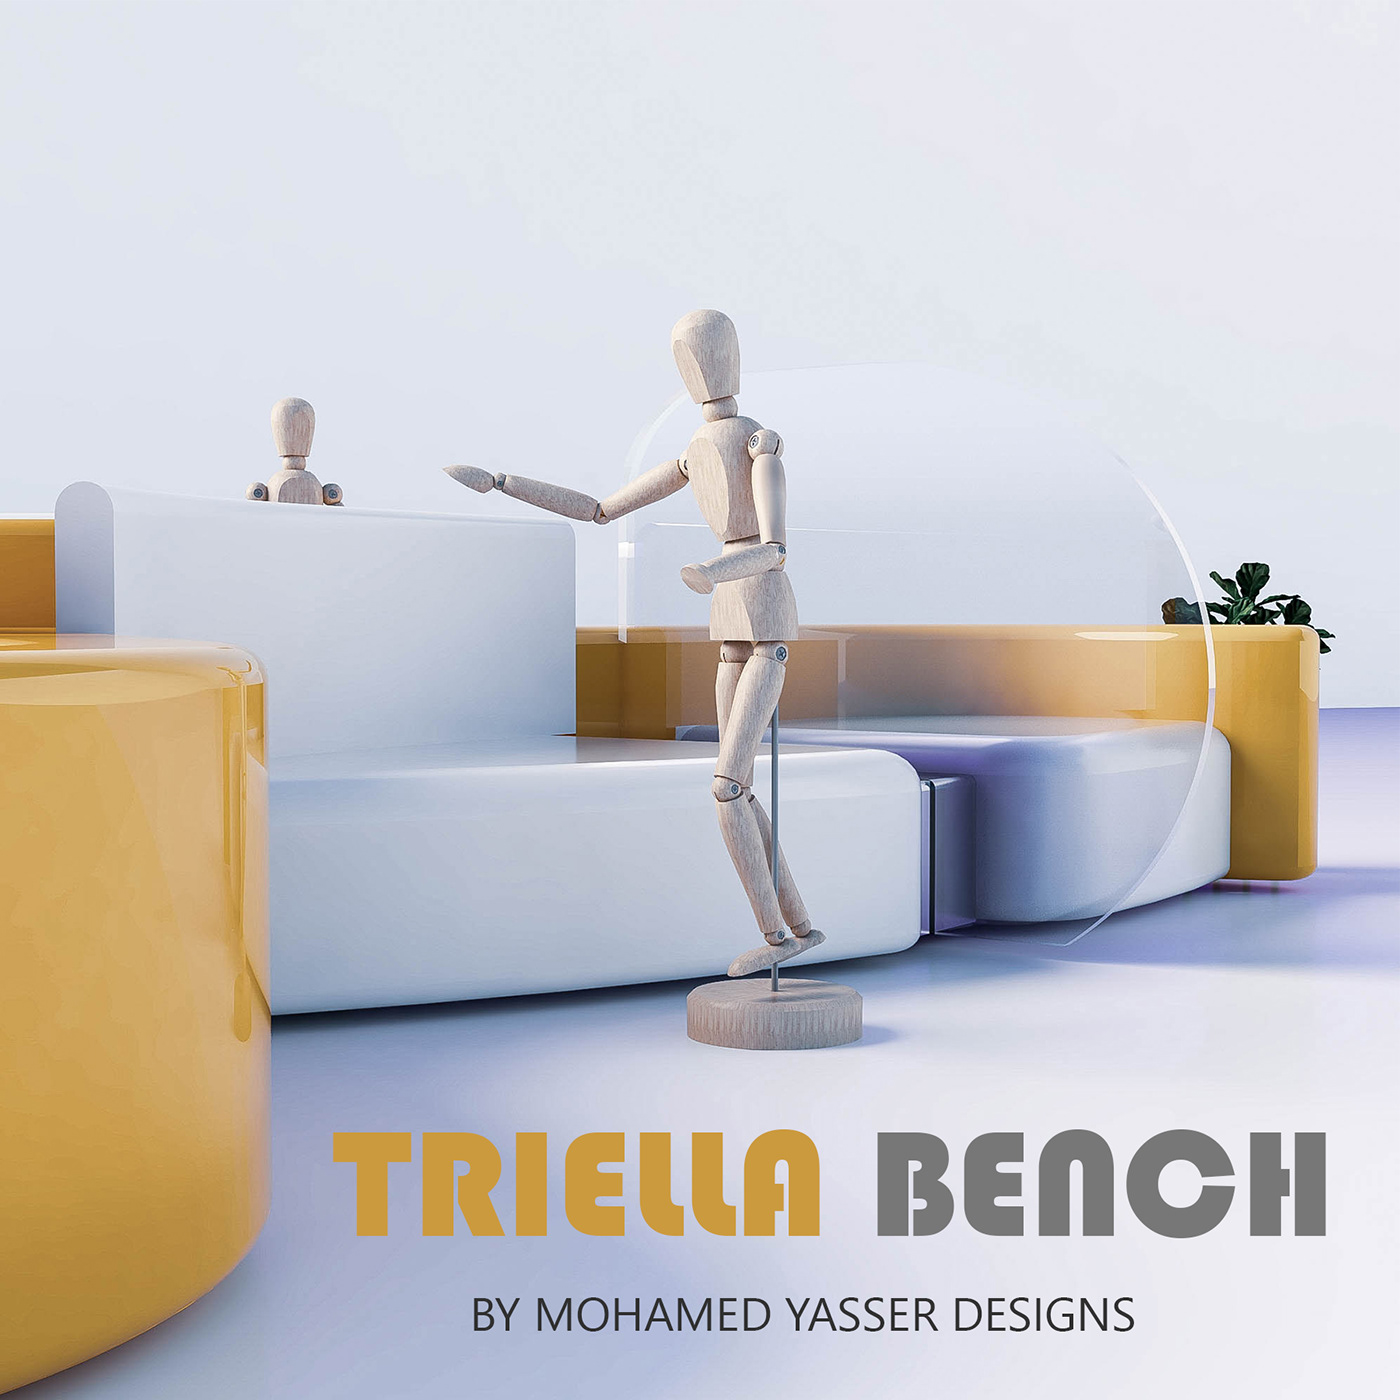 architecture design furniture_design product_design